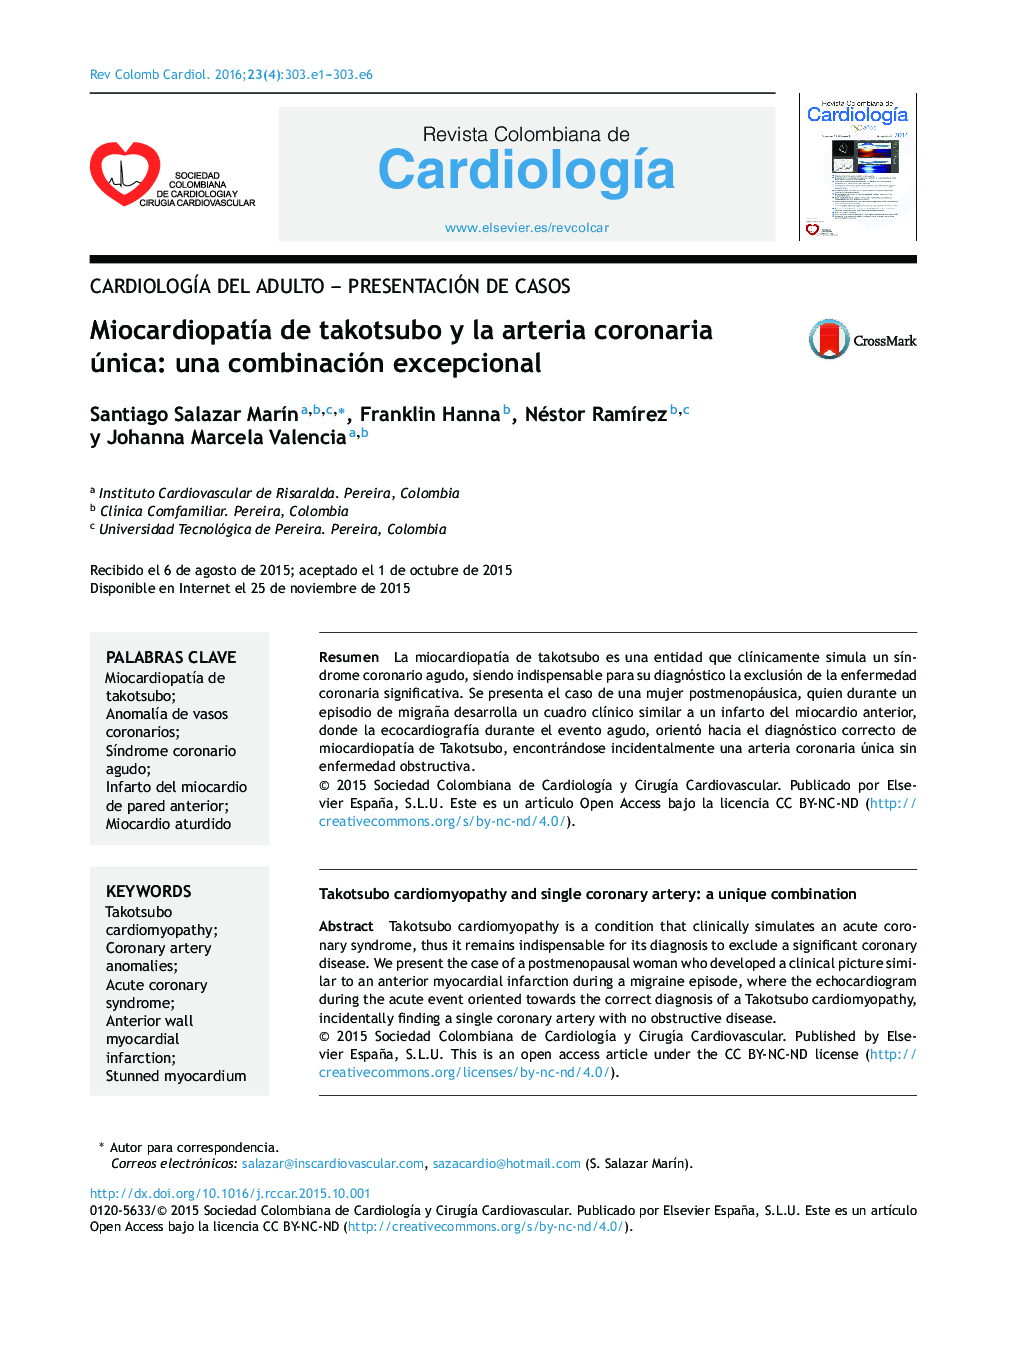 MiocardiopatÃ­a de takotsubo y la arteria coronaria única: una combinación excepcional